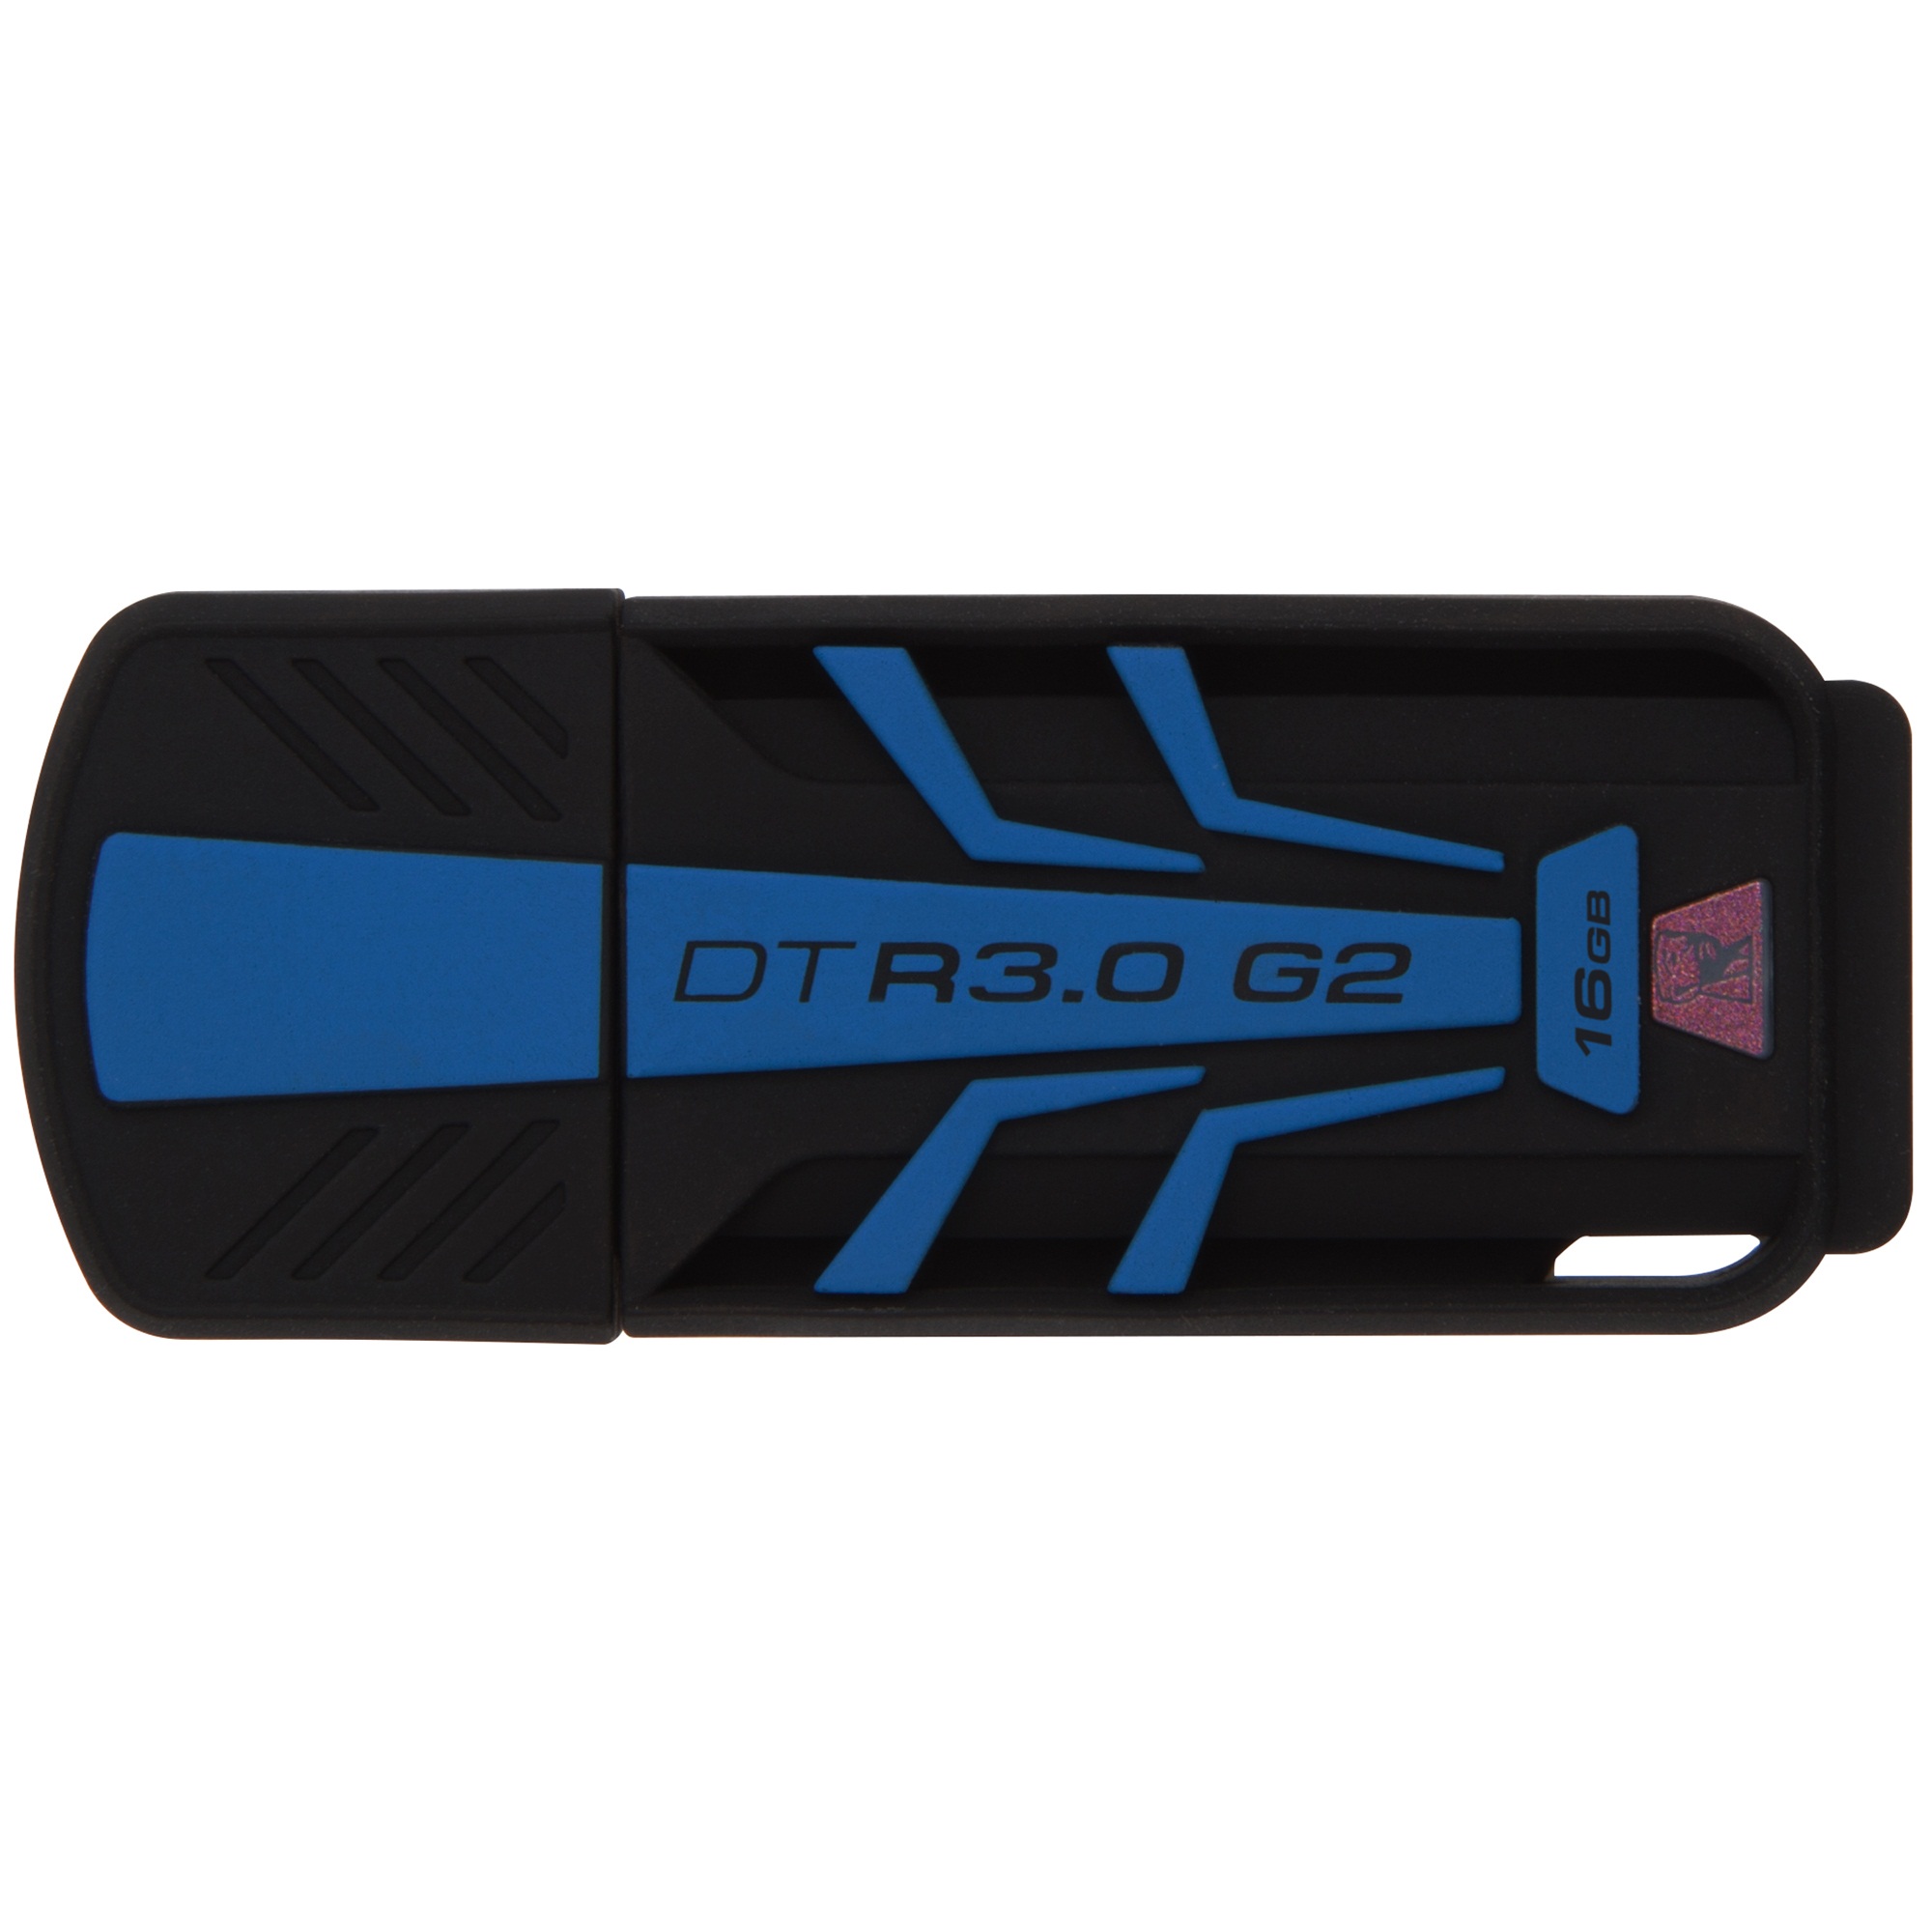  Memorie USB Kingston DataTraveler R3.0 G2, 16GB, USB 3.0 